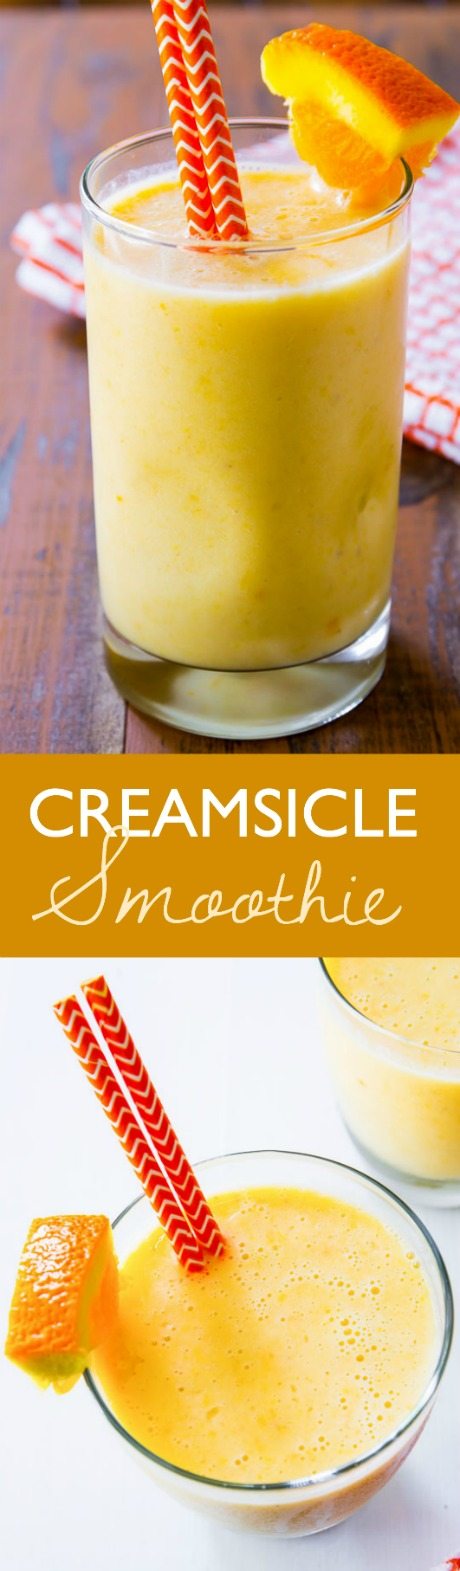 Ce smoothie crémeux et sain à 5 ingrédients a le goût d'un julius d'orange et d'une crème glacée combinée. La vitamine C n'a jamais été aussi bonne!